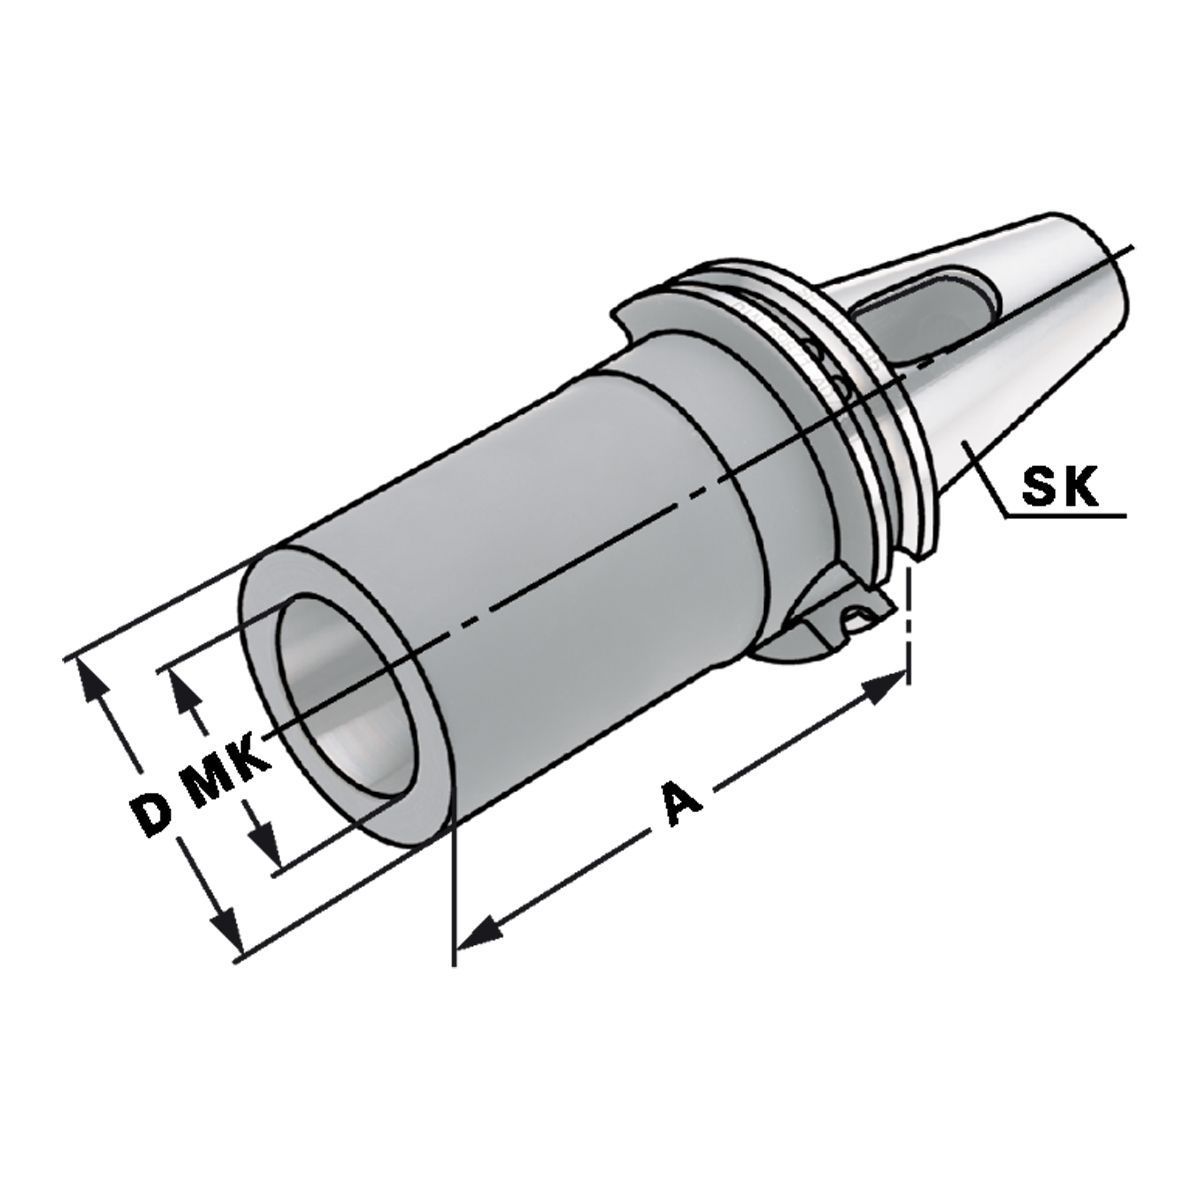 Zwischenhülse SK 50-2-117 für MK mit Austreibelappen DIN 6383